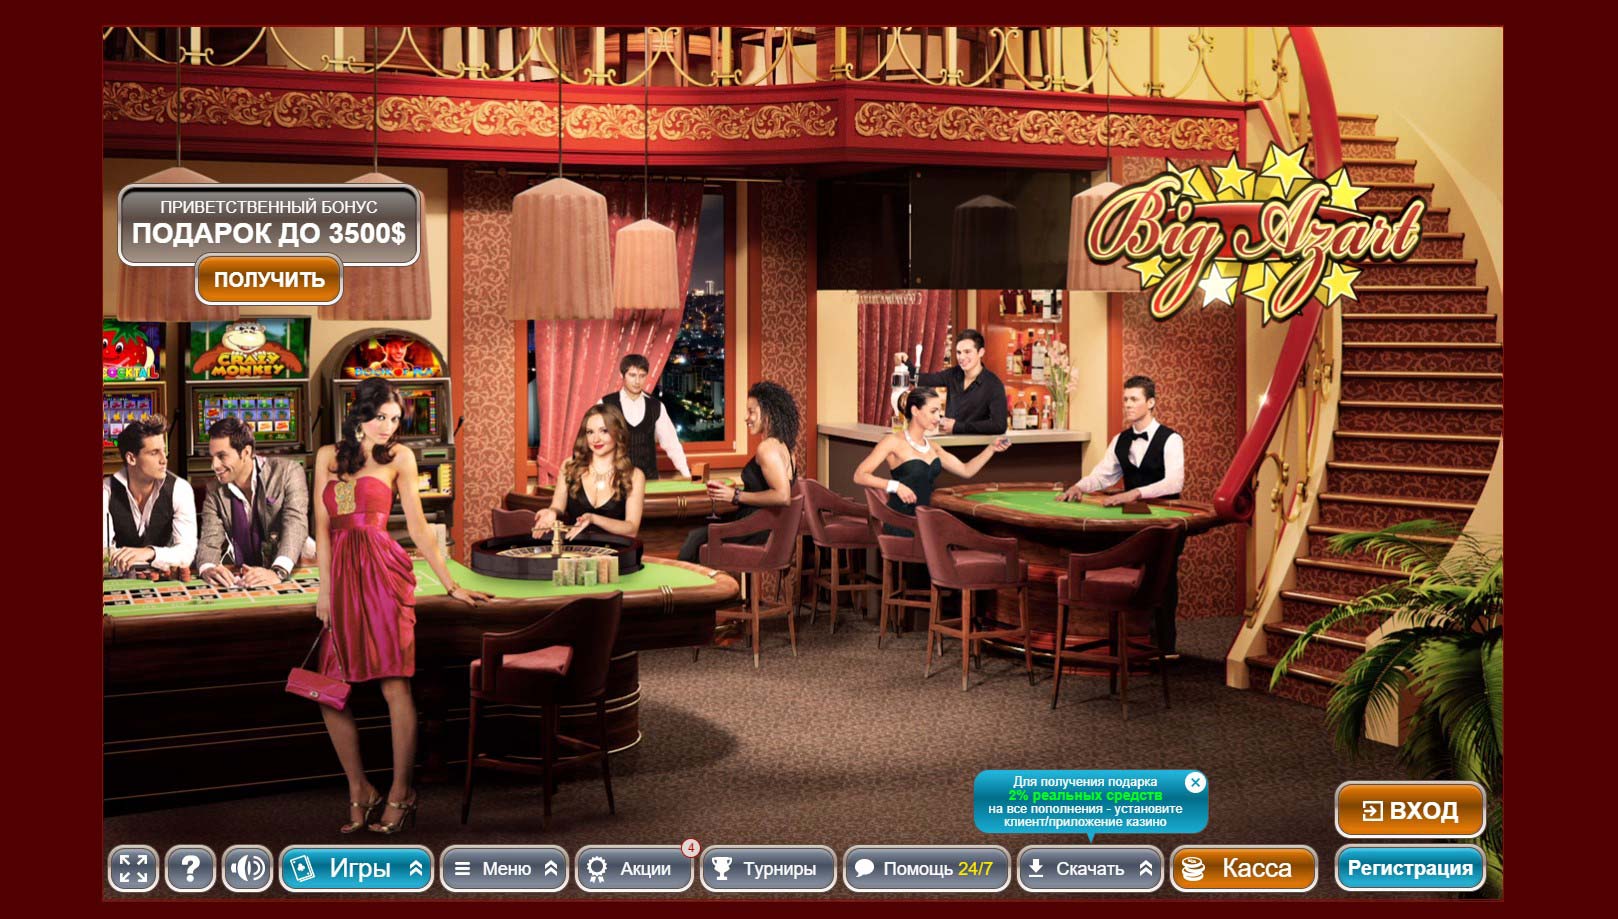 Казино биг азарт играть онлайн showthread php казино вулкан как лучше играть